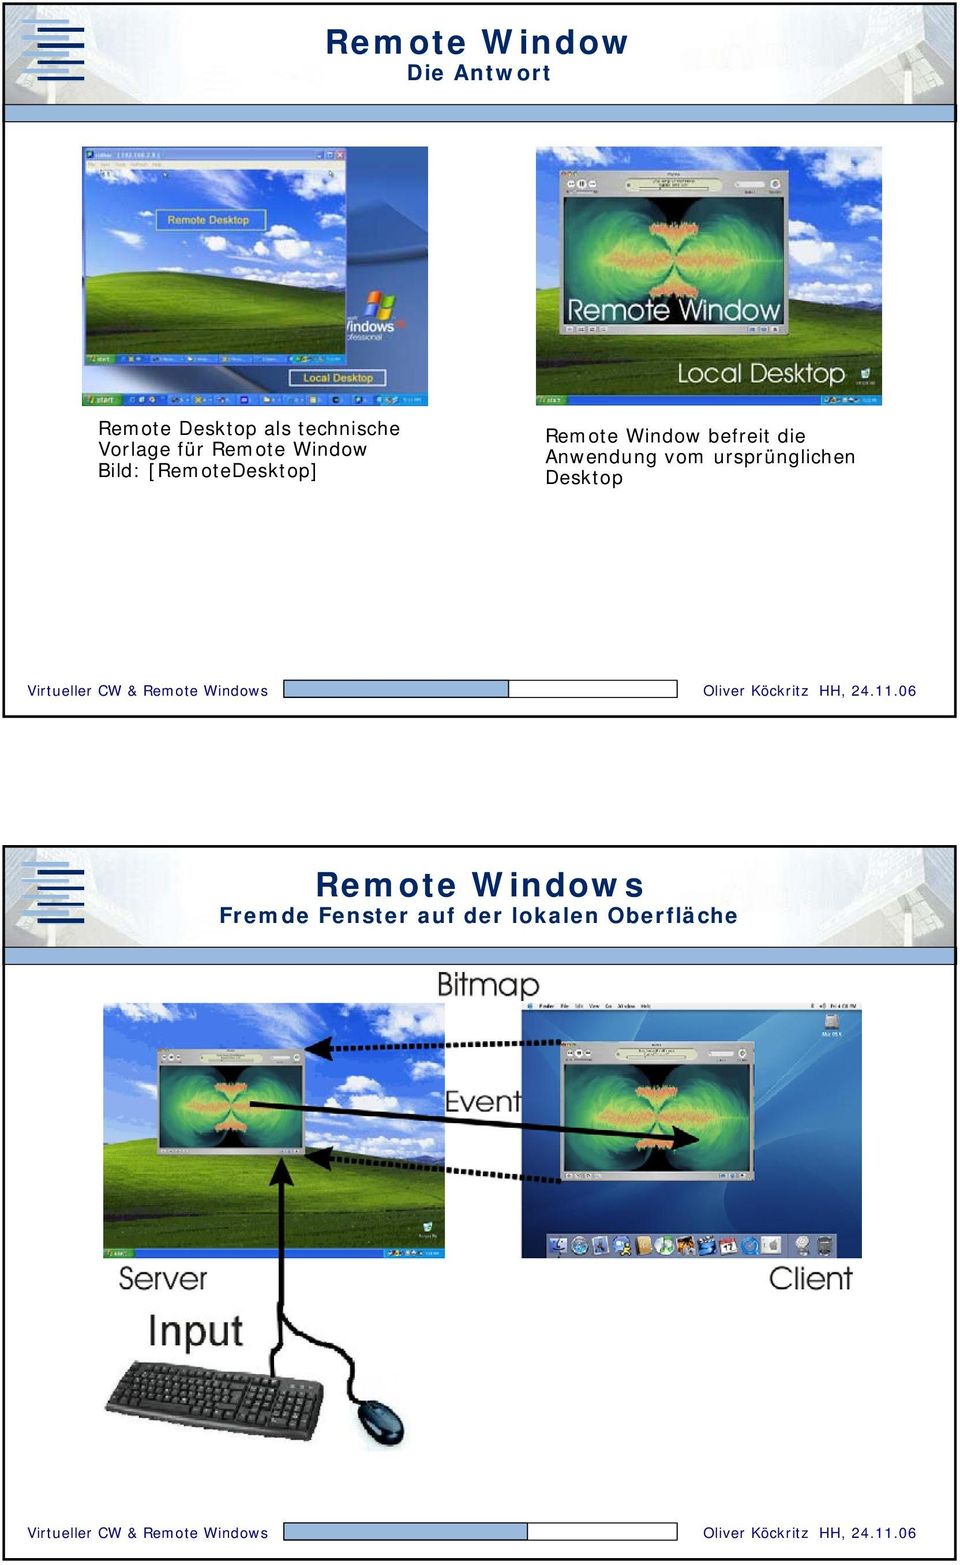 Window befreit die Anwendung vom ursprünglichen Desktop